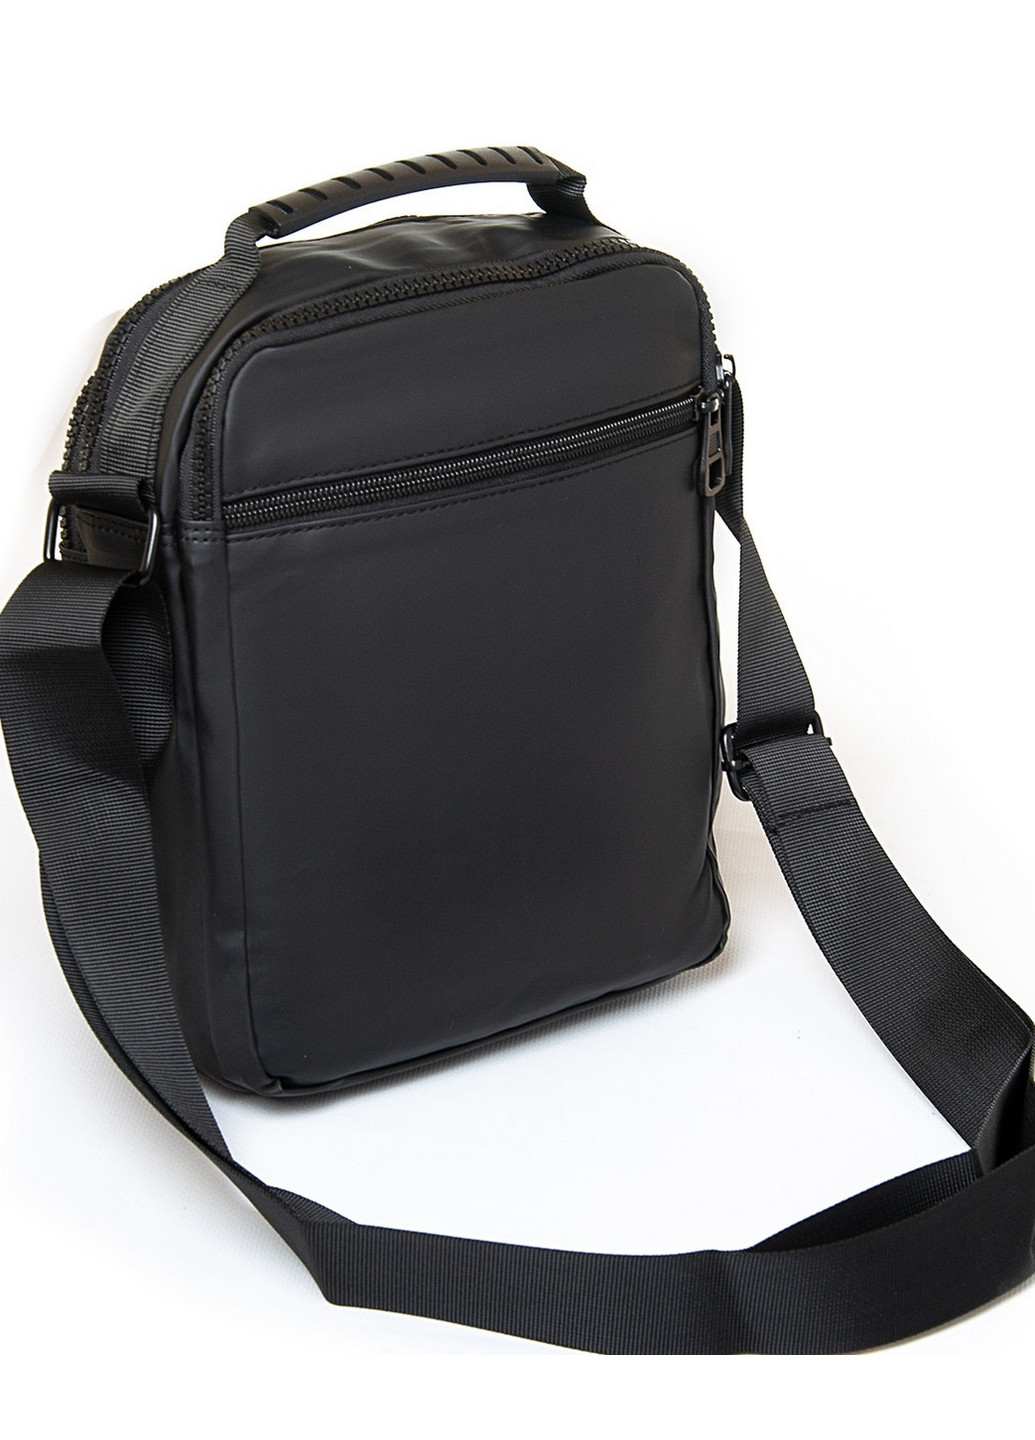 Тканевая мужская наплечная сумка Lanpad (276979639)